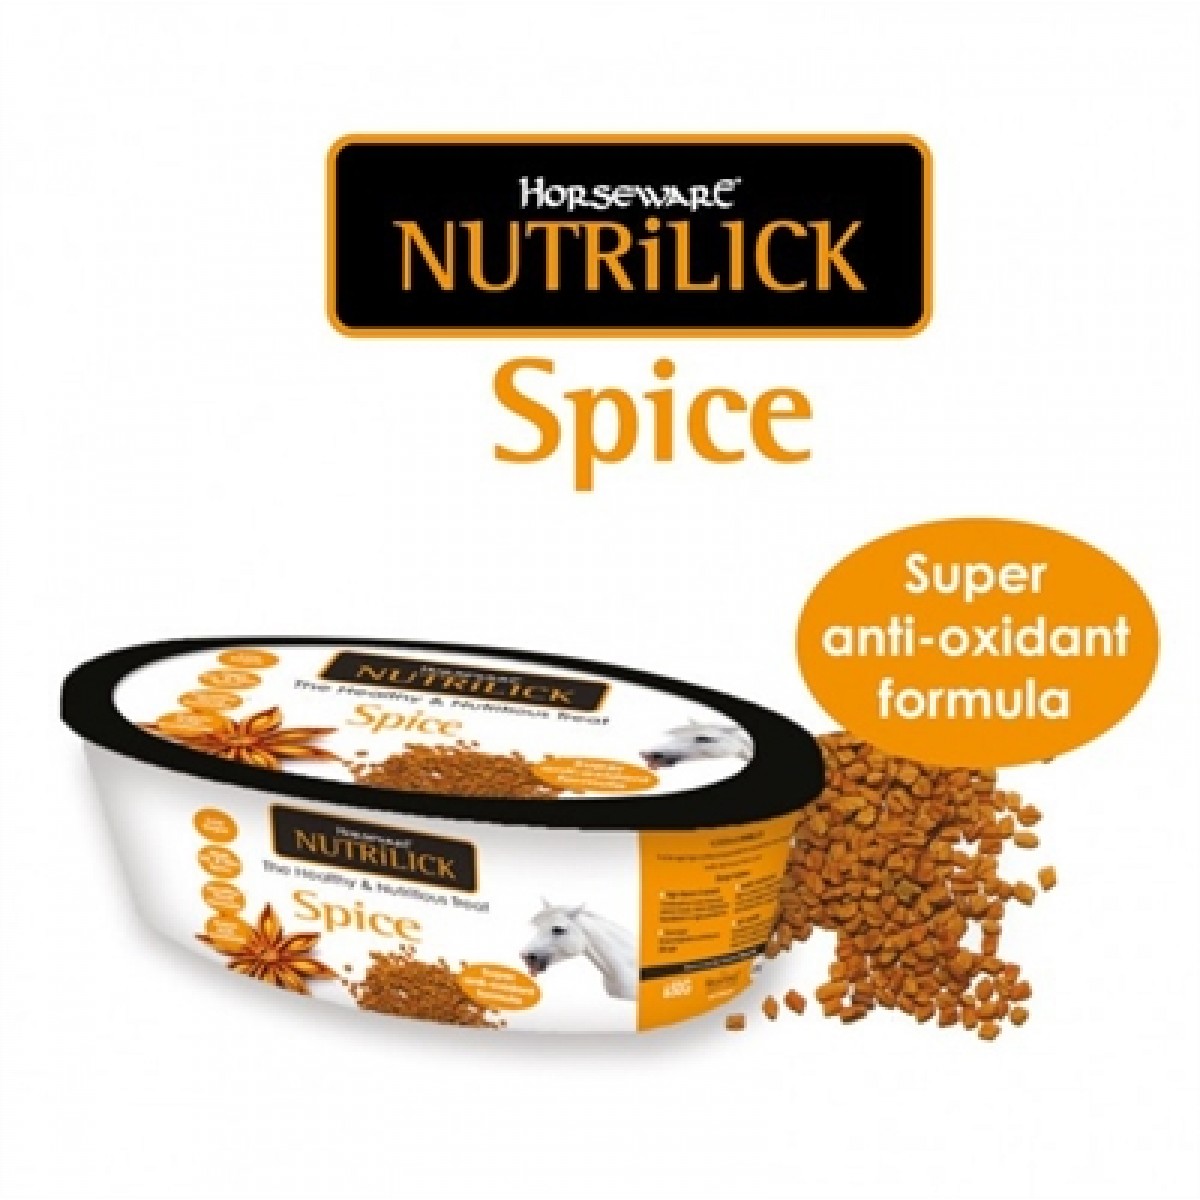 Horseware Nutrilick Spice